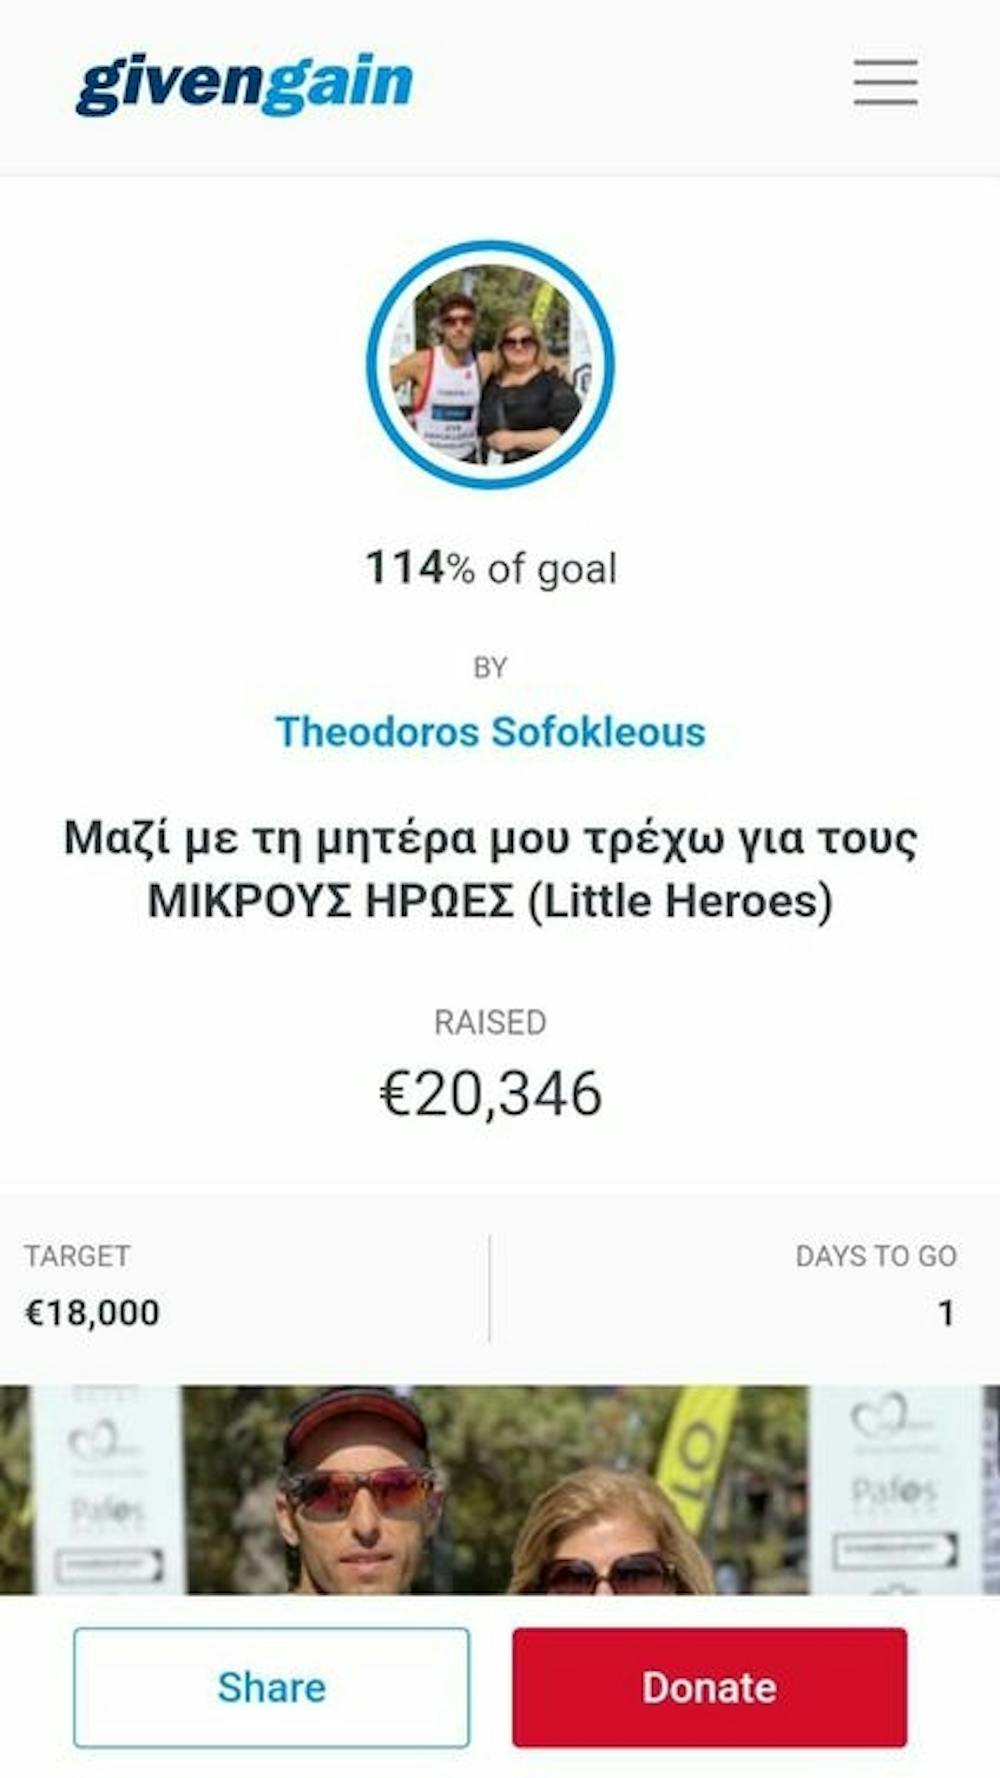 Σπάρταθλον: Ο Θεόδωρος Σοφοκλέους έτρεξε στη μνήμη της μητέρας του συγκεντρώνοντας χρήματα για τα παιδιά με καρκίνο! runbeat.gr 